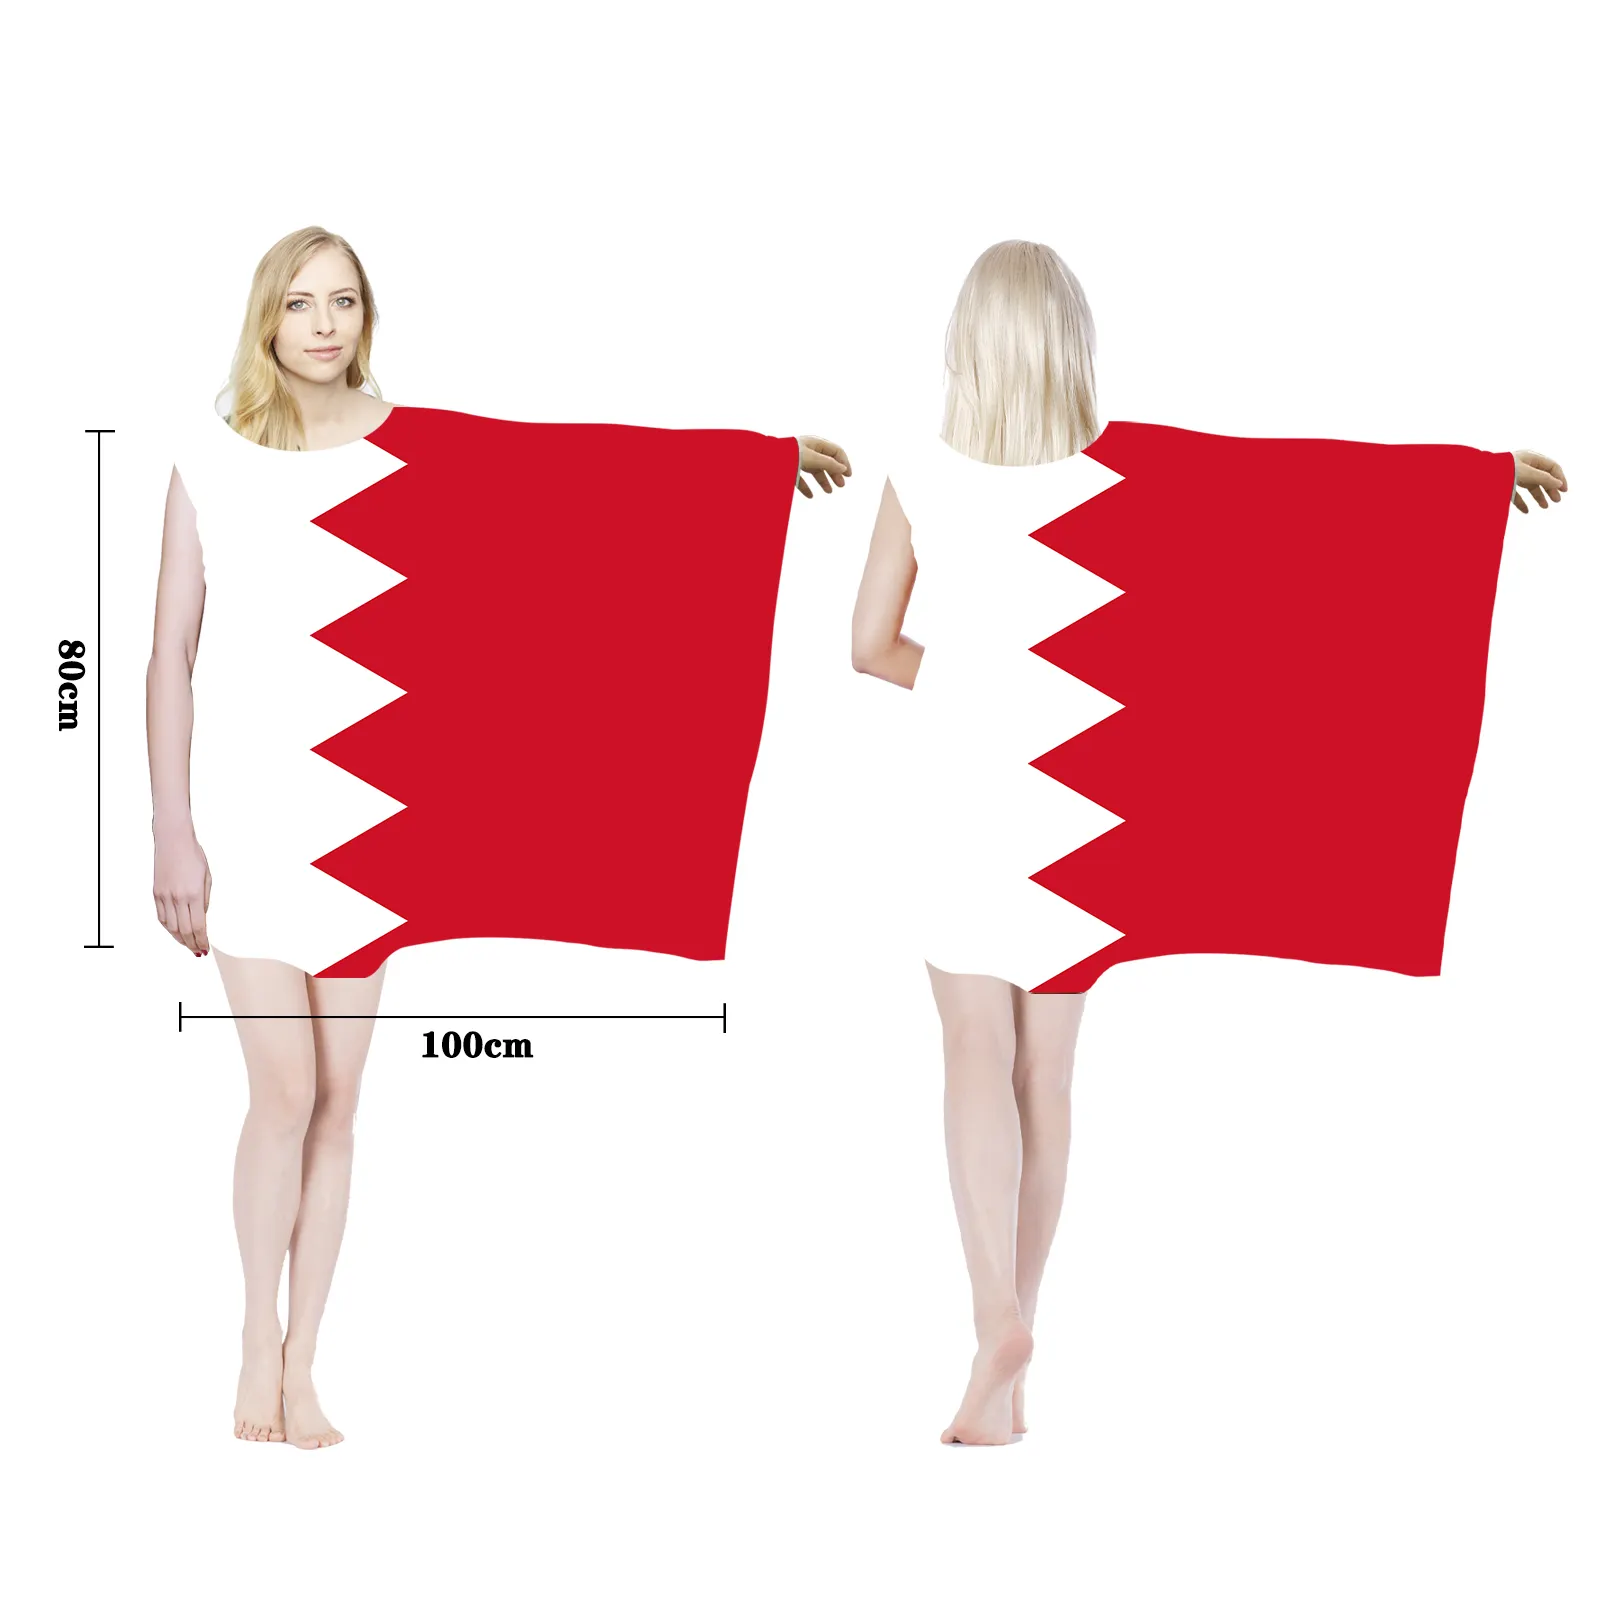 الجملة البوليستر علم الدولة الوطني تصميم قطر الجسم العلم الرؤوس بأكمام طويلة